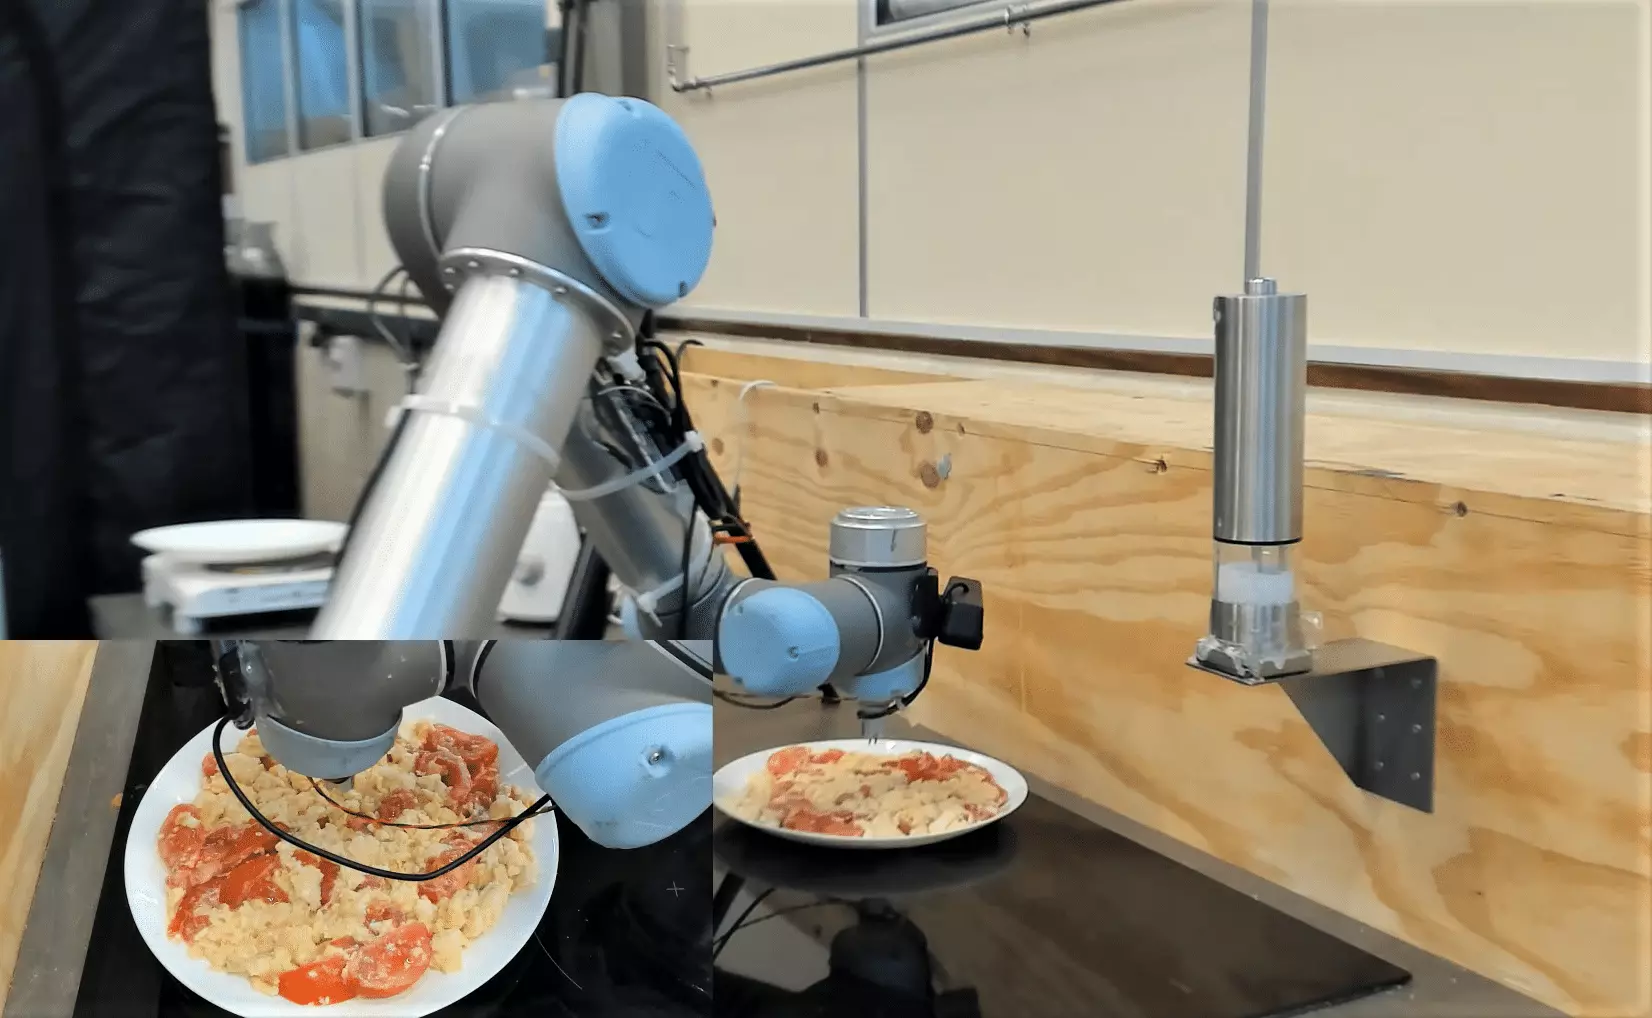 Робот-повар научился пробовать и оценивать вкус еды во время готовки